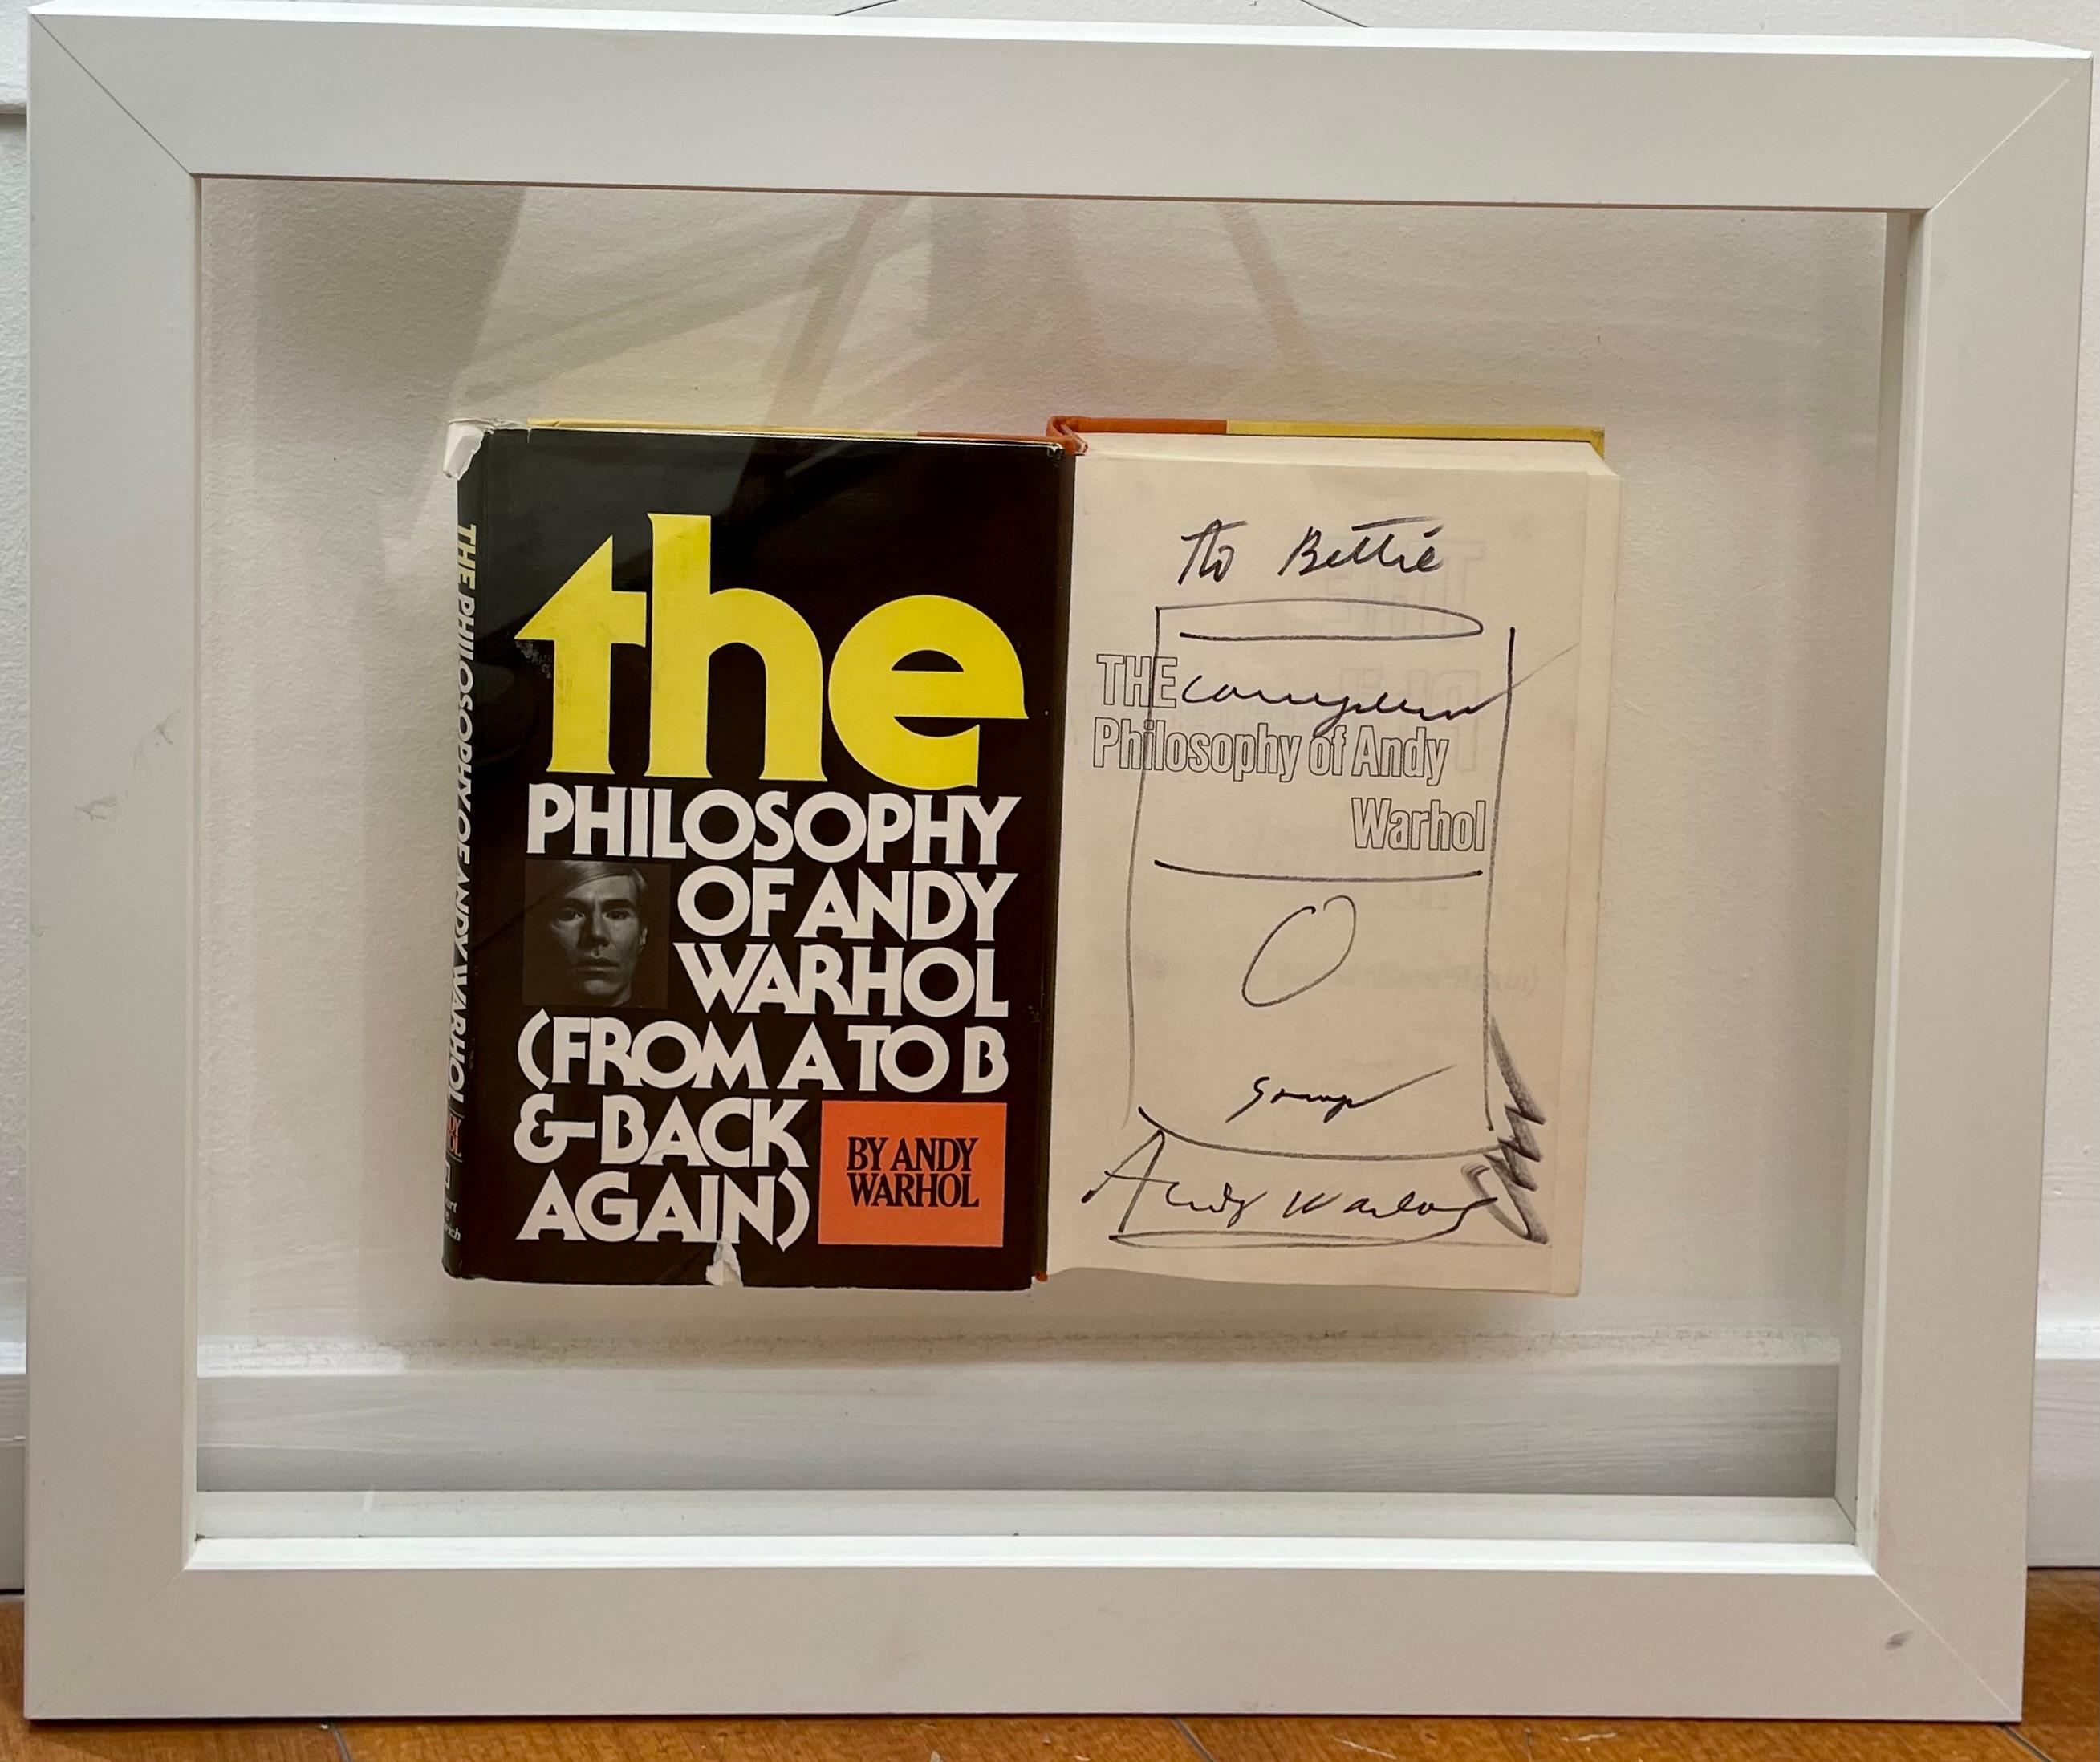 Un livre d'Andy Warhol. Signé et esquissé par l'artiste sur la première page du livre.
Signé au bas de la première page.

La philosophie d'Andy Warhol (de A à B et inversement) 
Écrit par Andy Warhol. 
Publié par Harcourt Brace Jovanovich, 1975